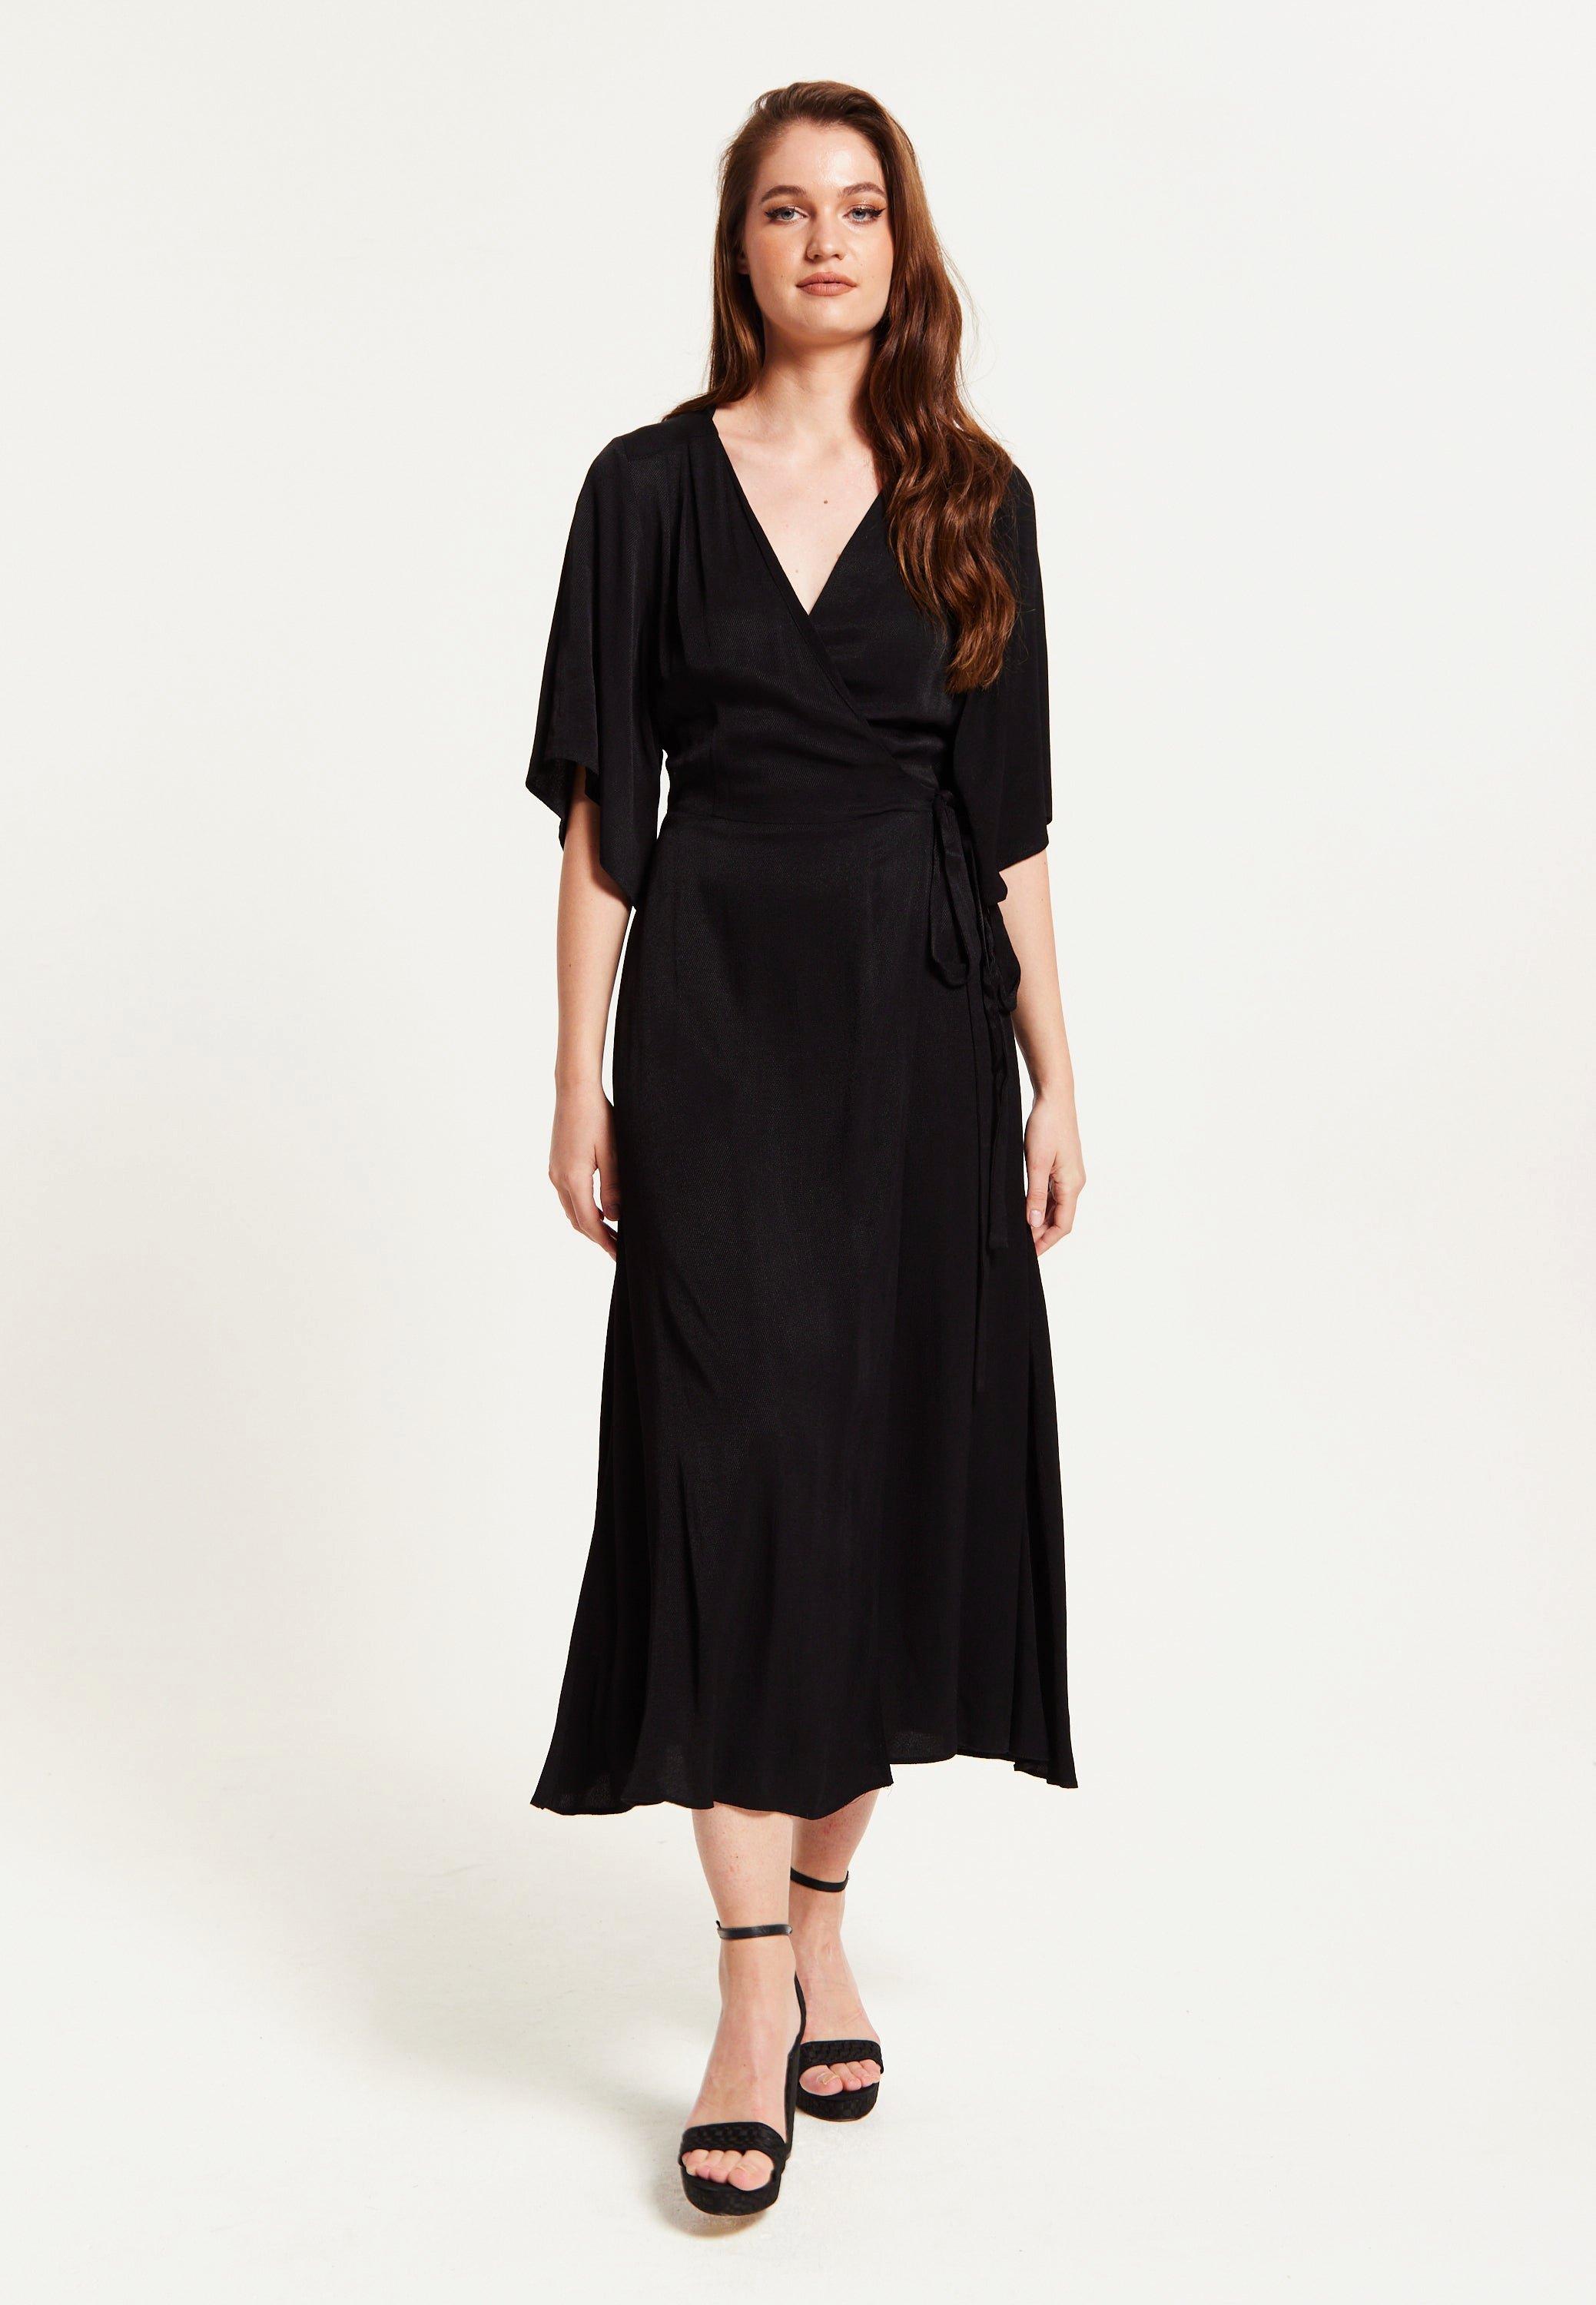 Black Maxi Wrap Dress With Kimono Sleeves